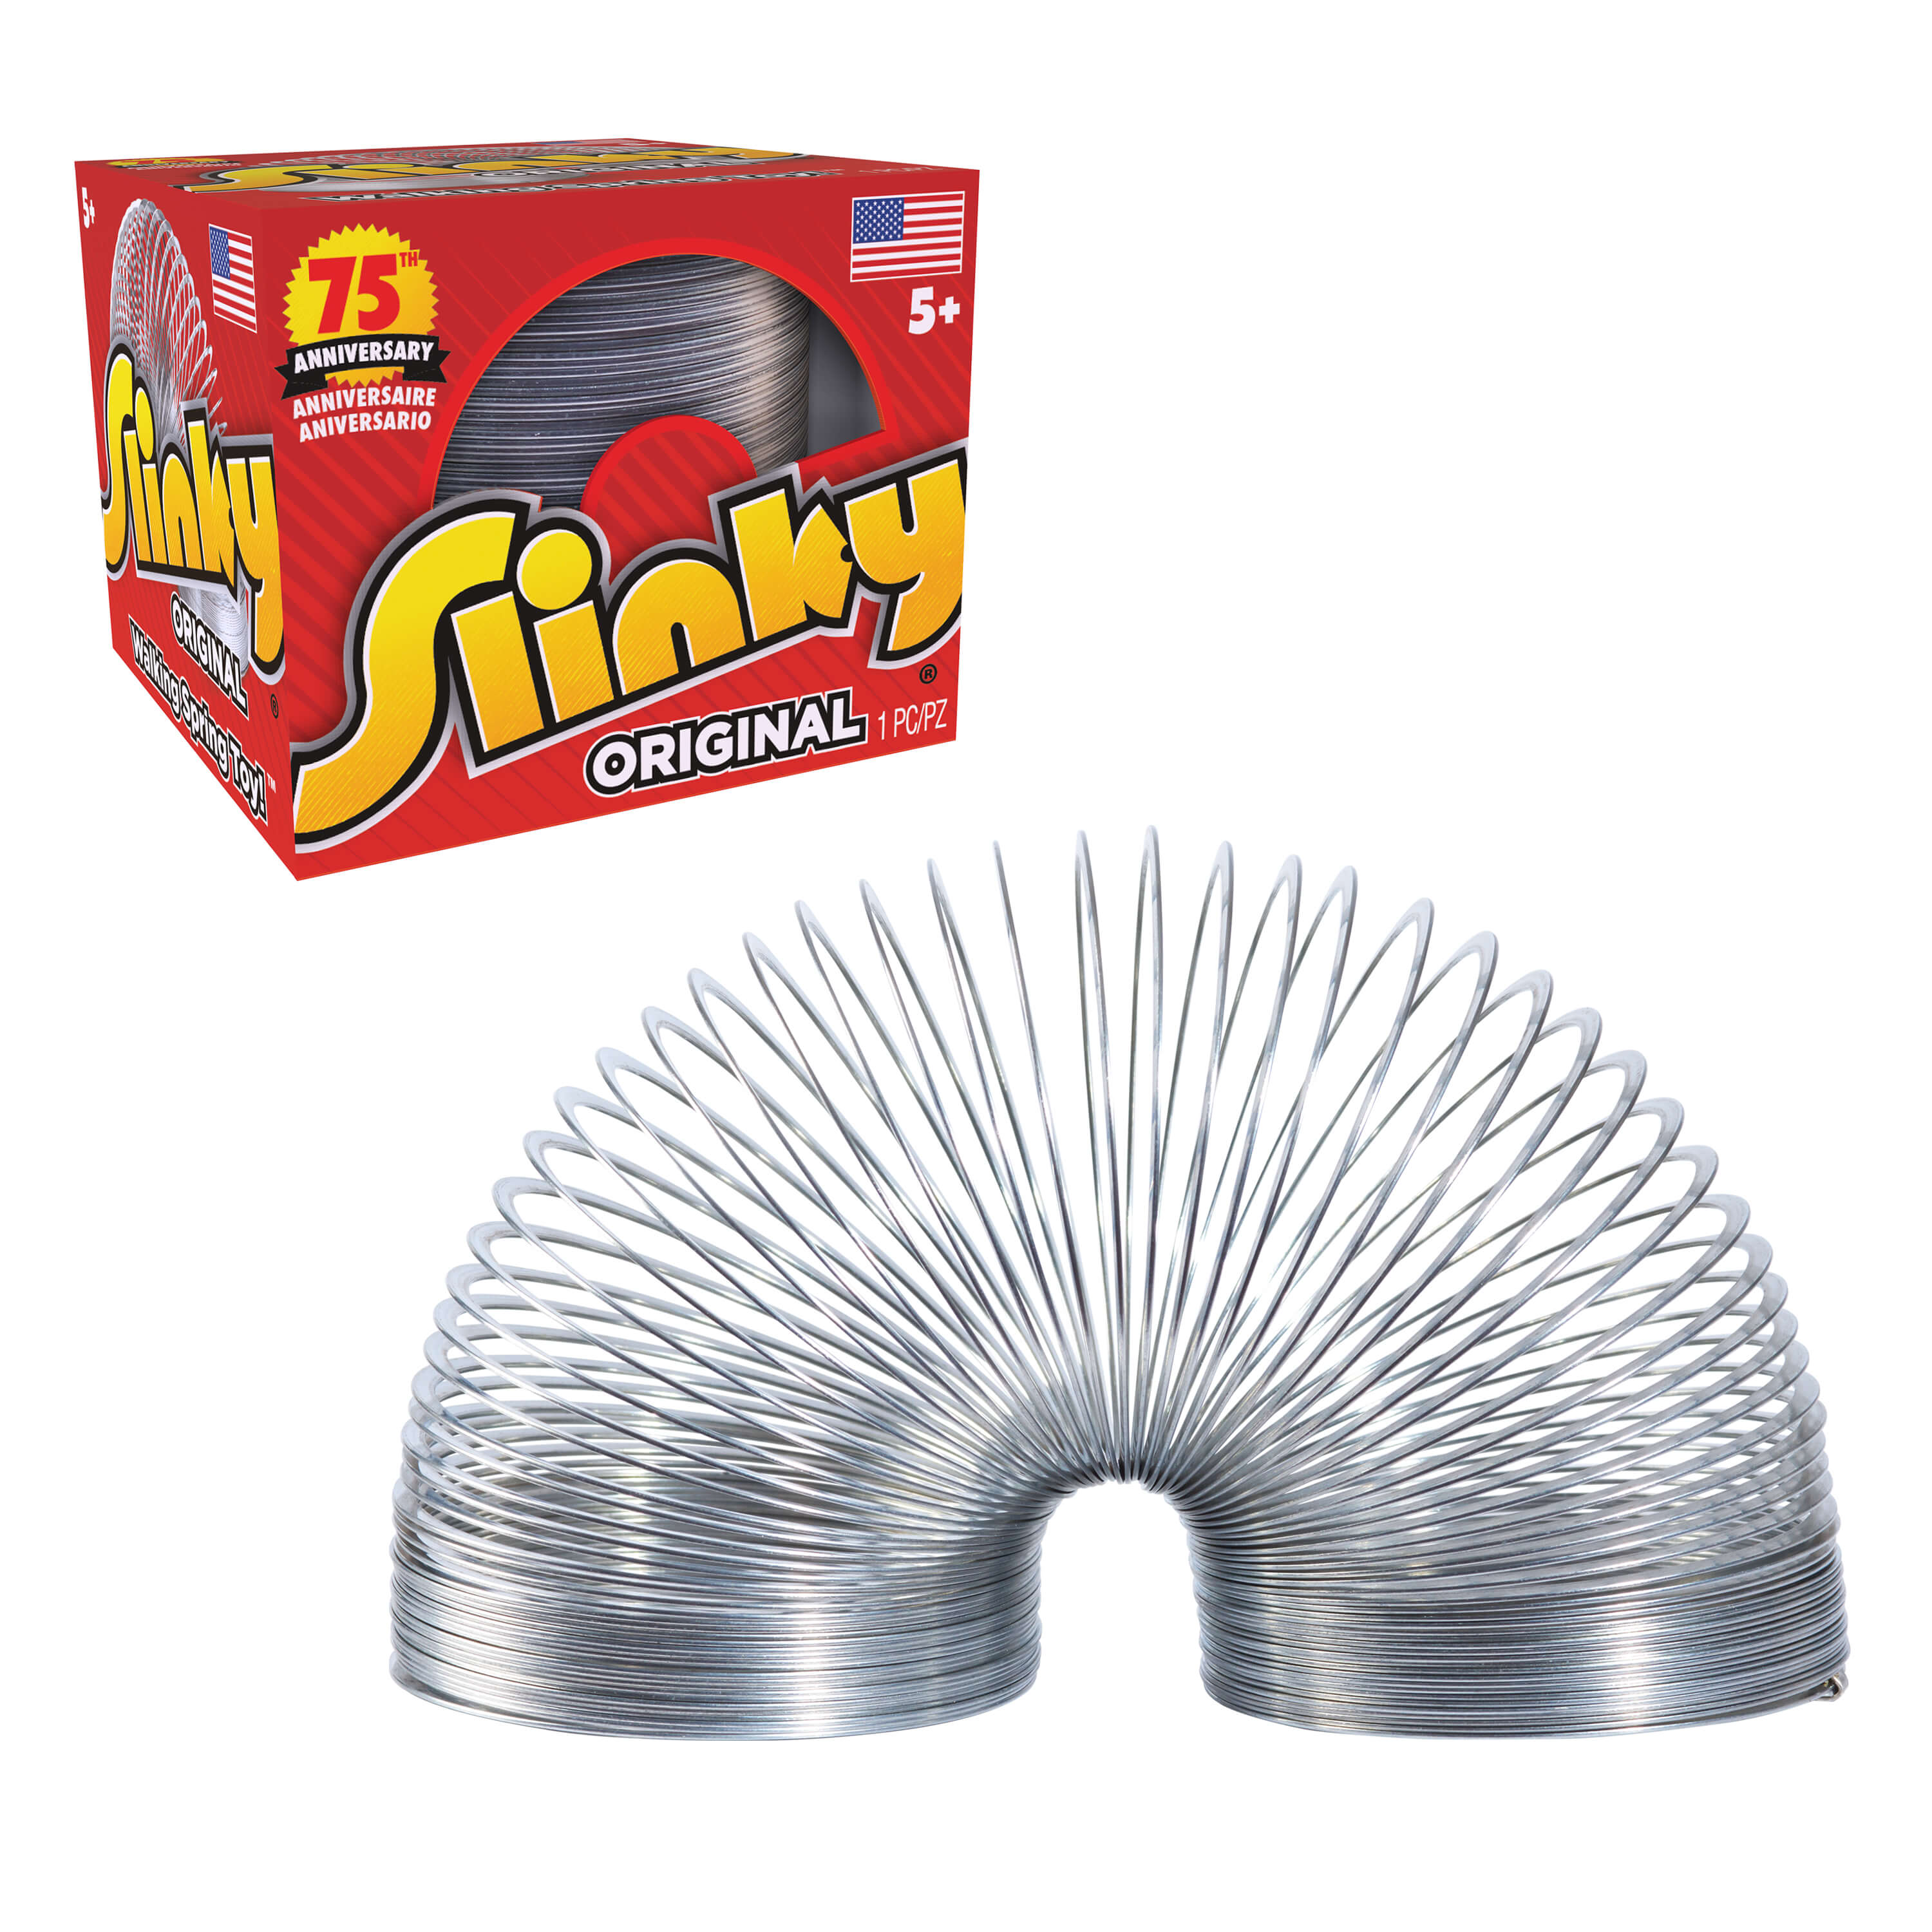 The Original Slinky Walking Spring Toy, Metal Slinky